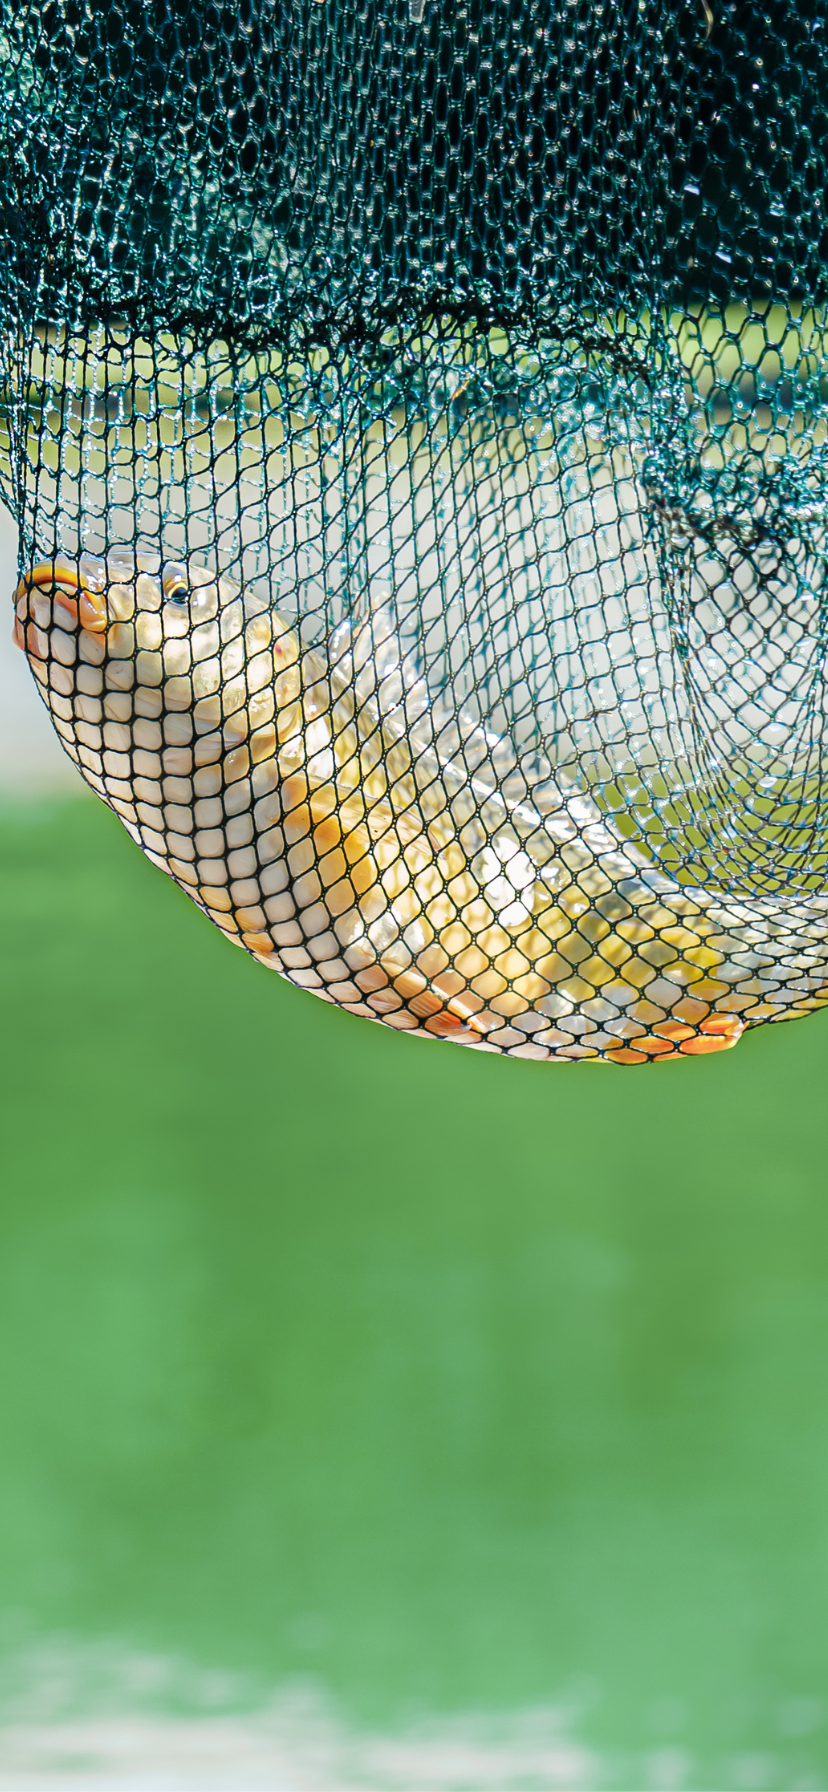 Choosing the Best Net for Fish Farming: Nylon Net vs HDPE Net